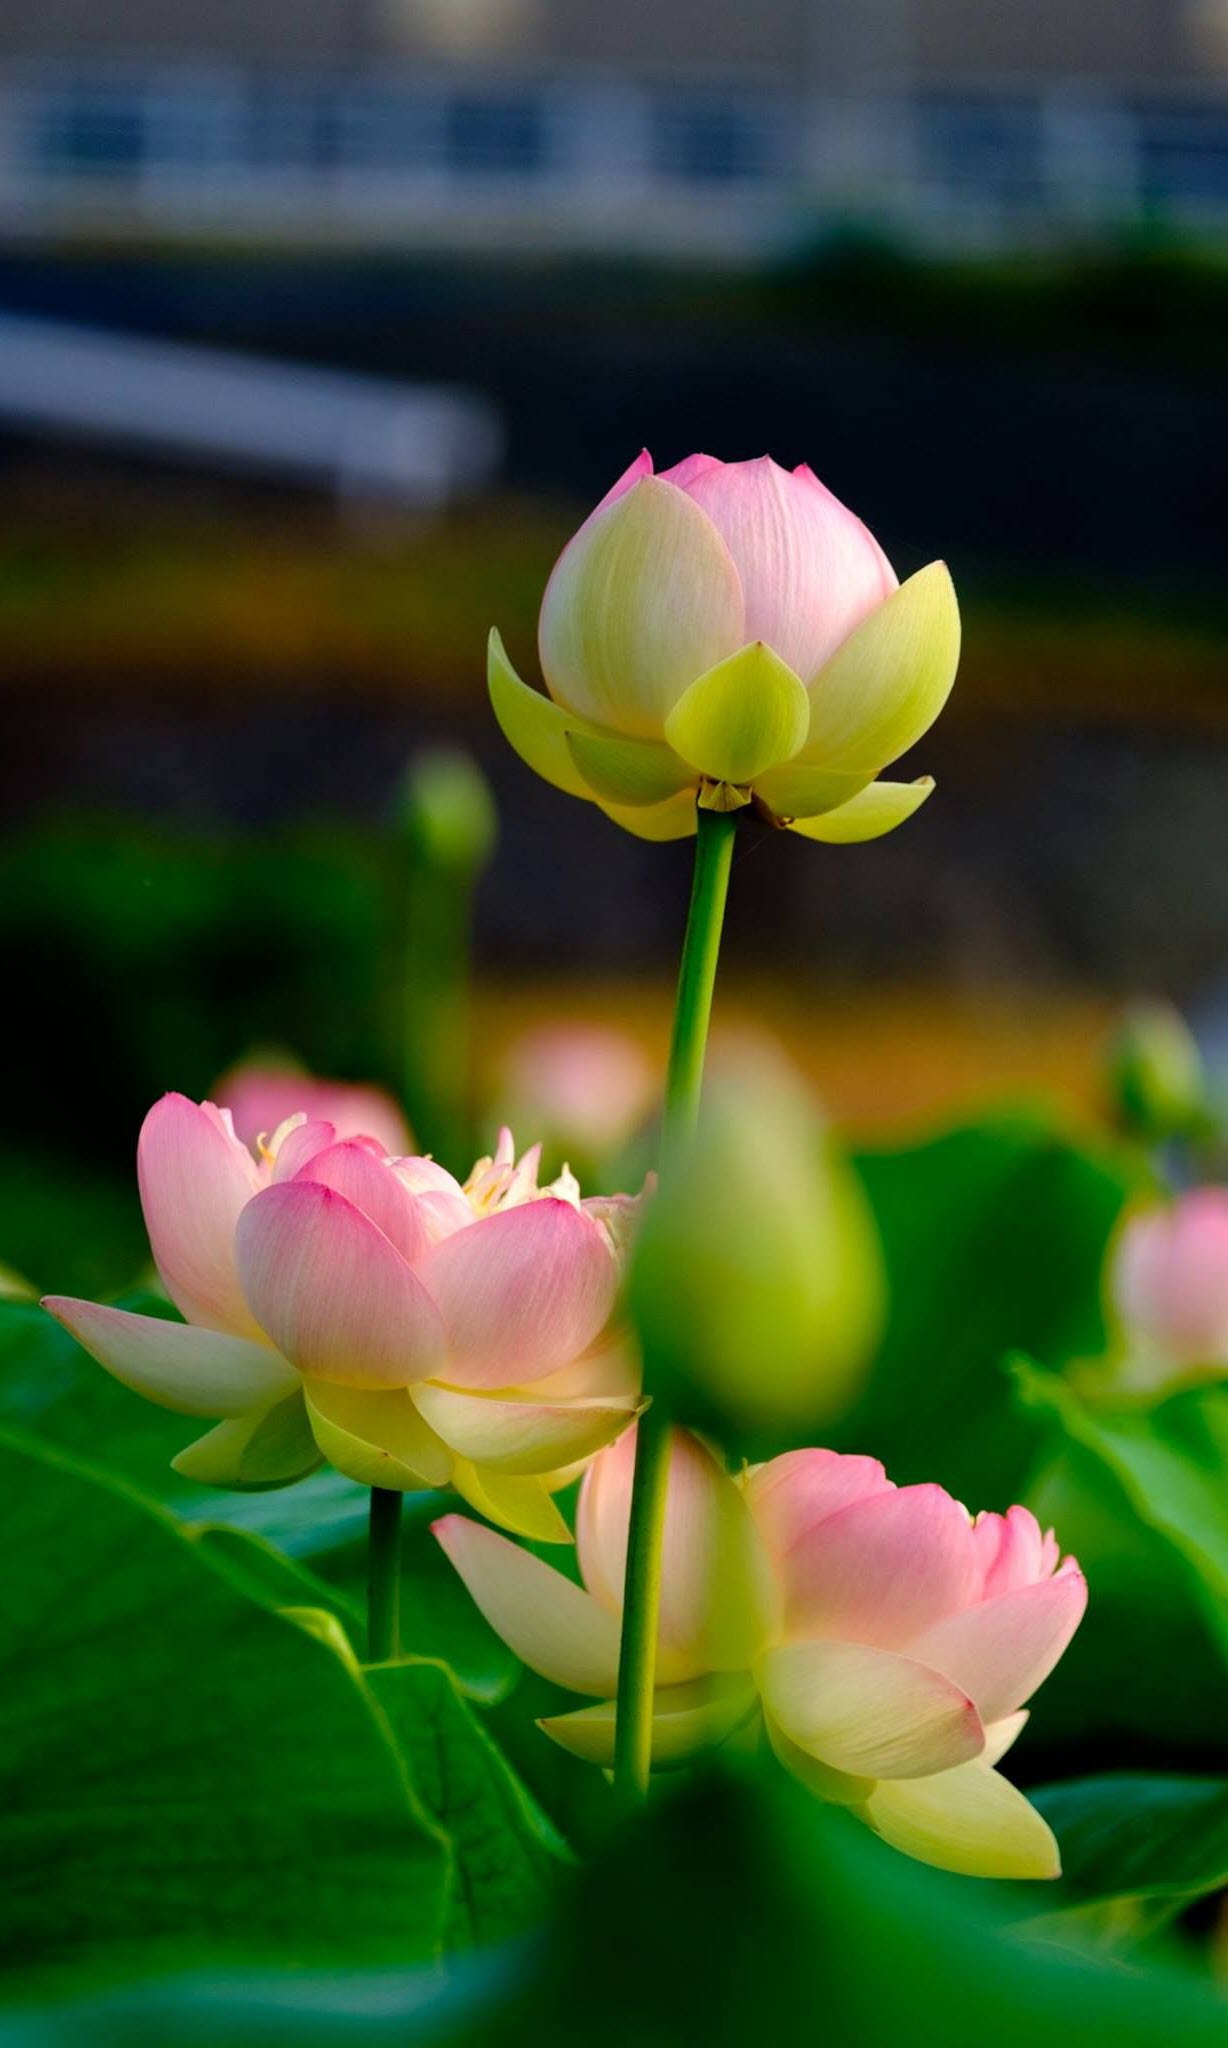 Hình ảnh hoa sen đẹp: Nhìn vào hình ảnh hoa sen đẹp này, bạn sẽ cảm nhận được sự thuần khiết, thanh nhã và độc đáo của loài hoa này. Với những cánh hoa trắng tinh khôi, chúng tiêu biểu cho tinh thần của văn hoá Việt Nam. Hãy để hình ảnh này truyền tải cho bạn một thế giới cổ kính đầy nghệ thuật.